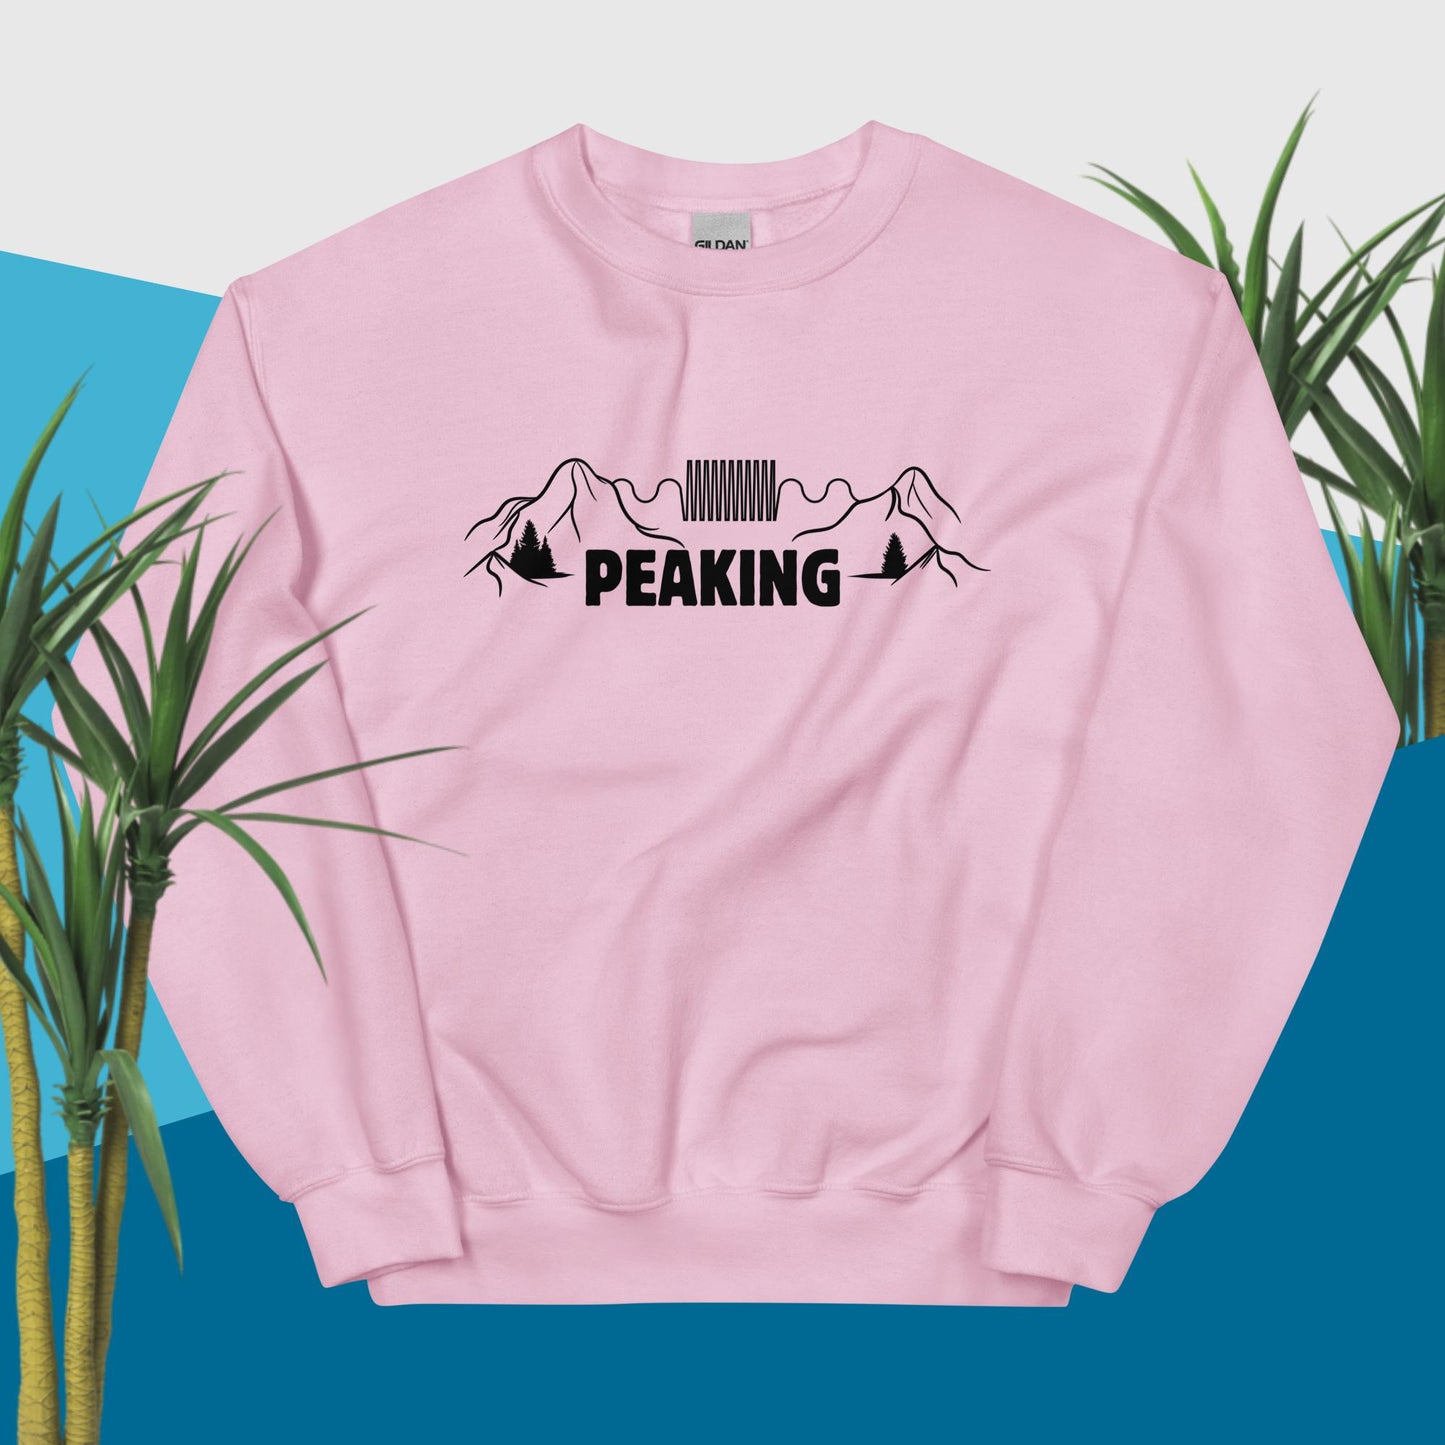 "Peaking" Pun Crew Neck Sweatshirt